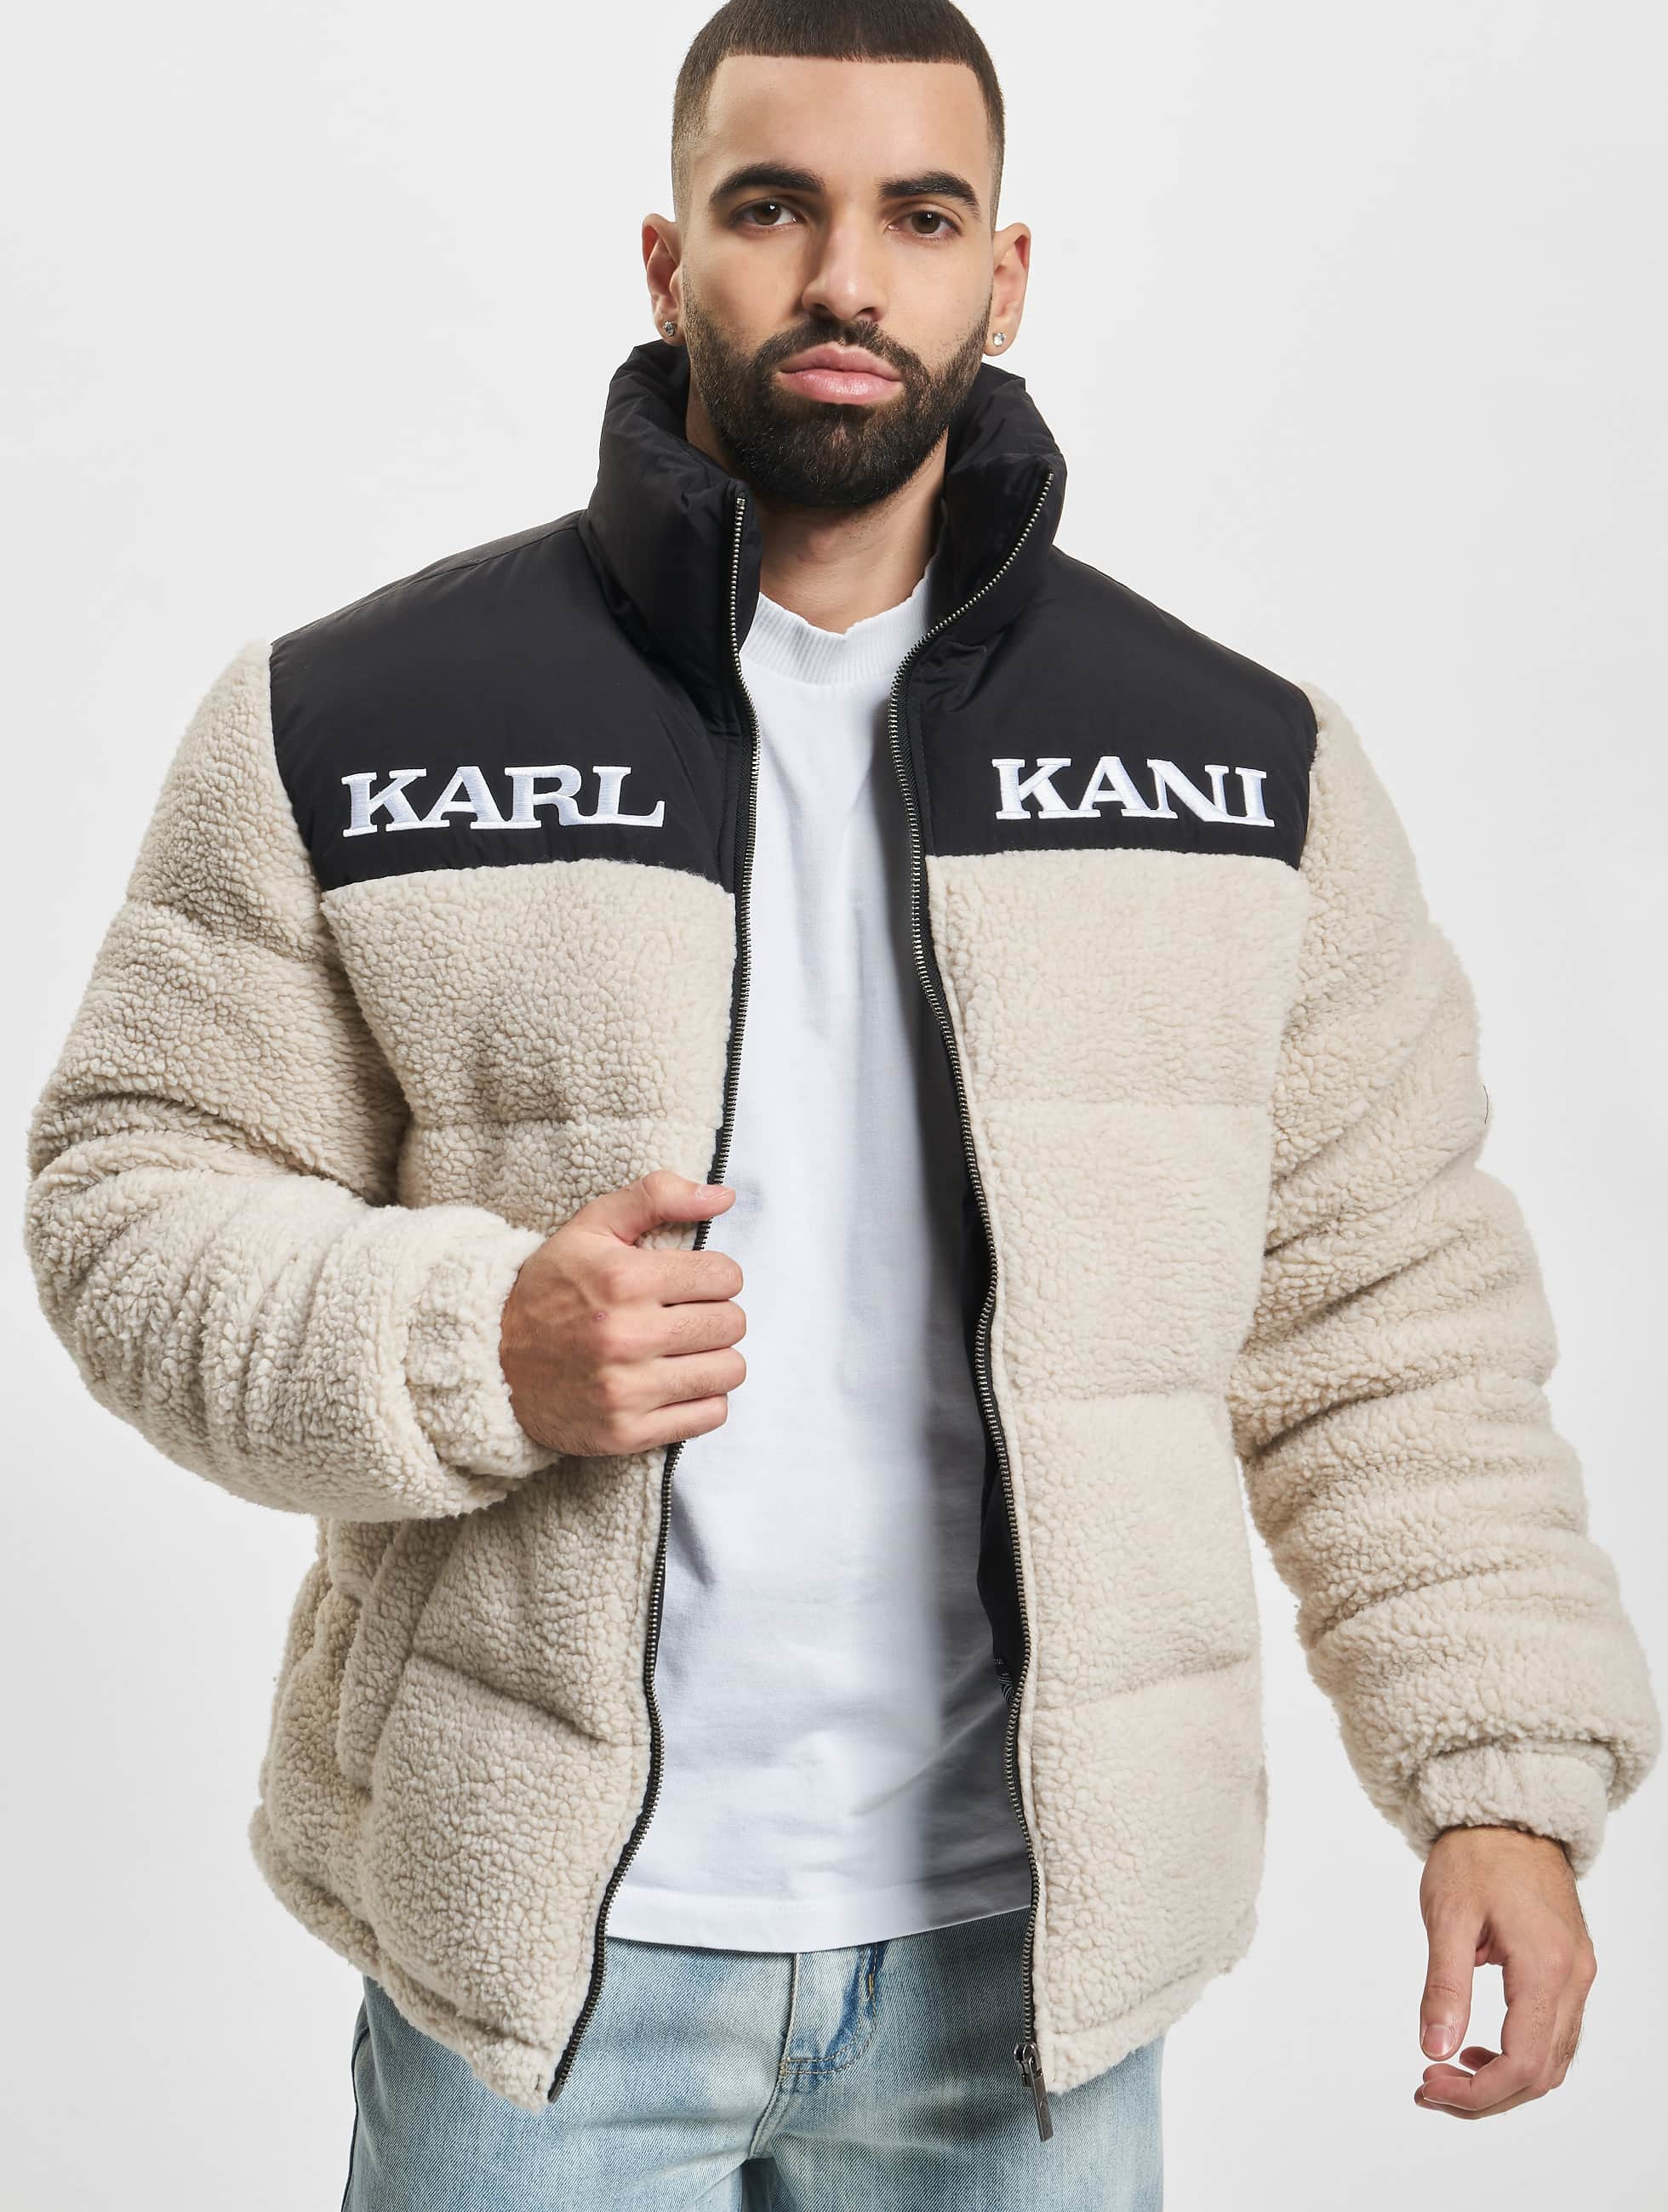 Introducir 107+ imagen marca de ropa kani - Abzlocal.mx